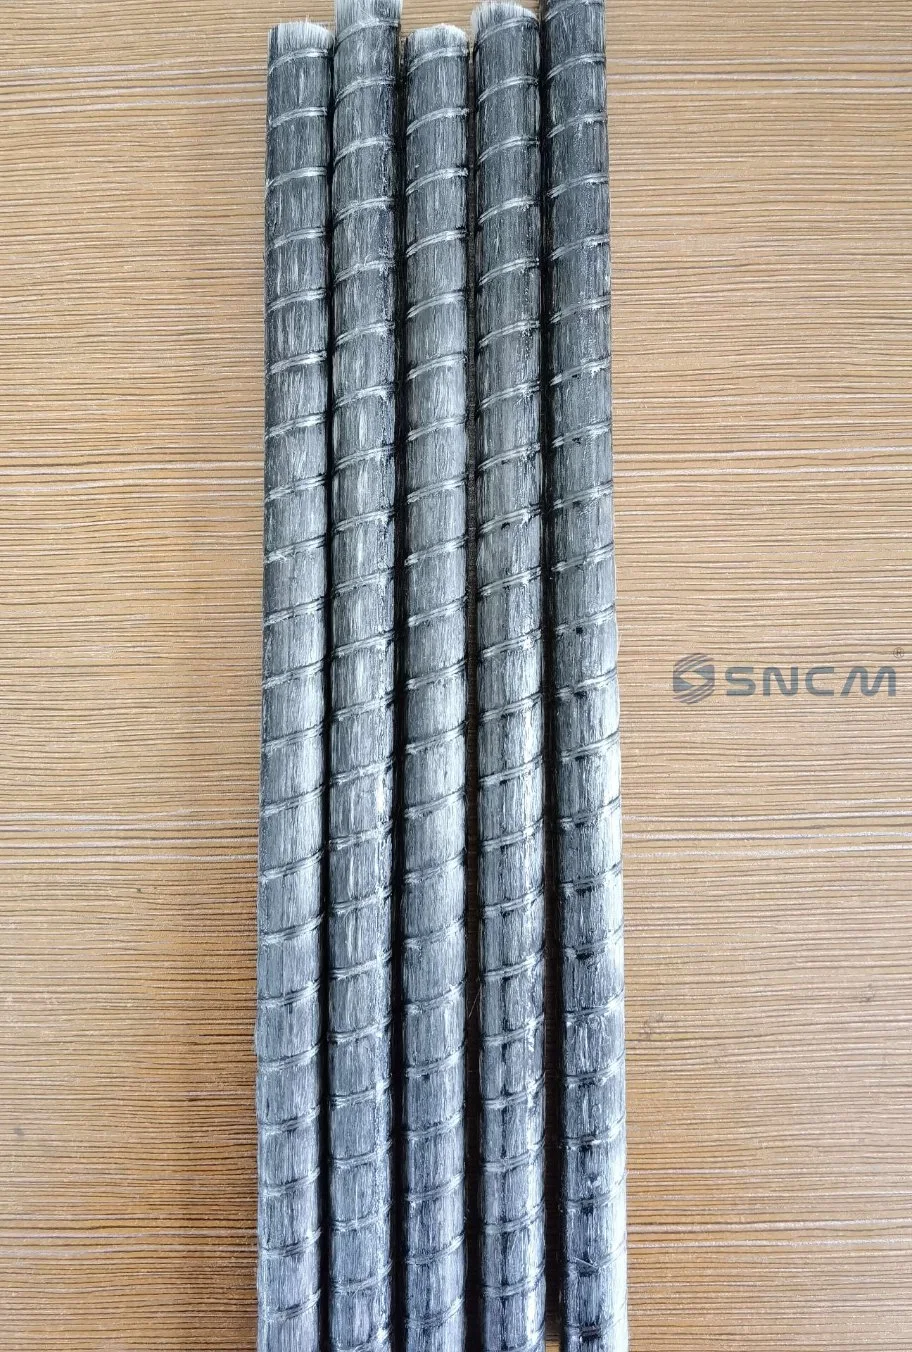 Material de construcción de paneles compuestos de aluminio para revestimiento de pared